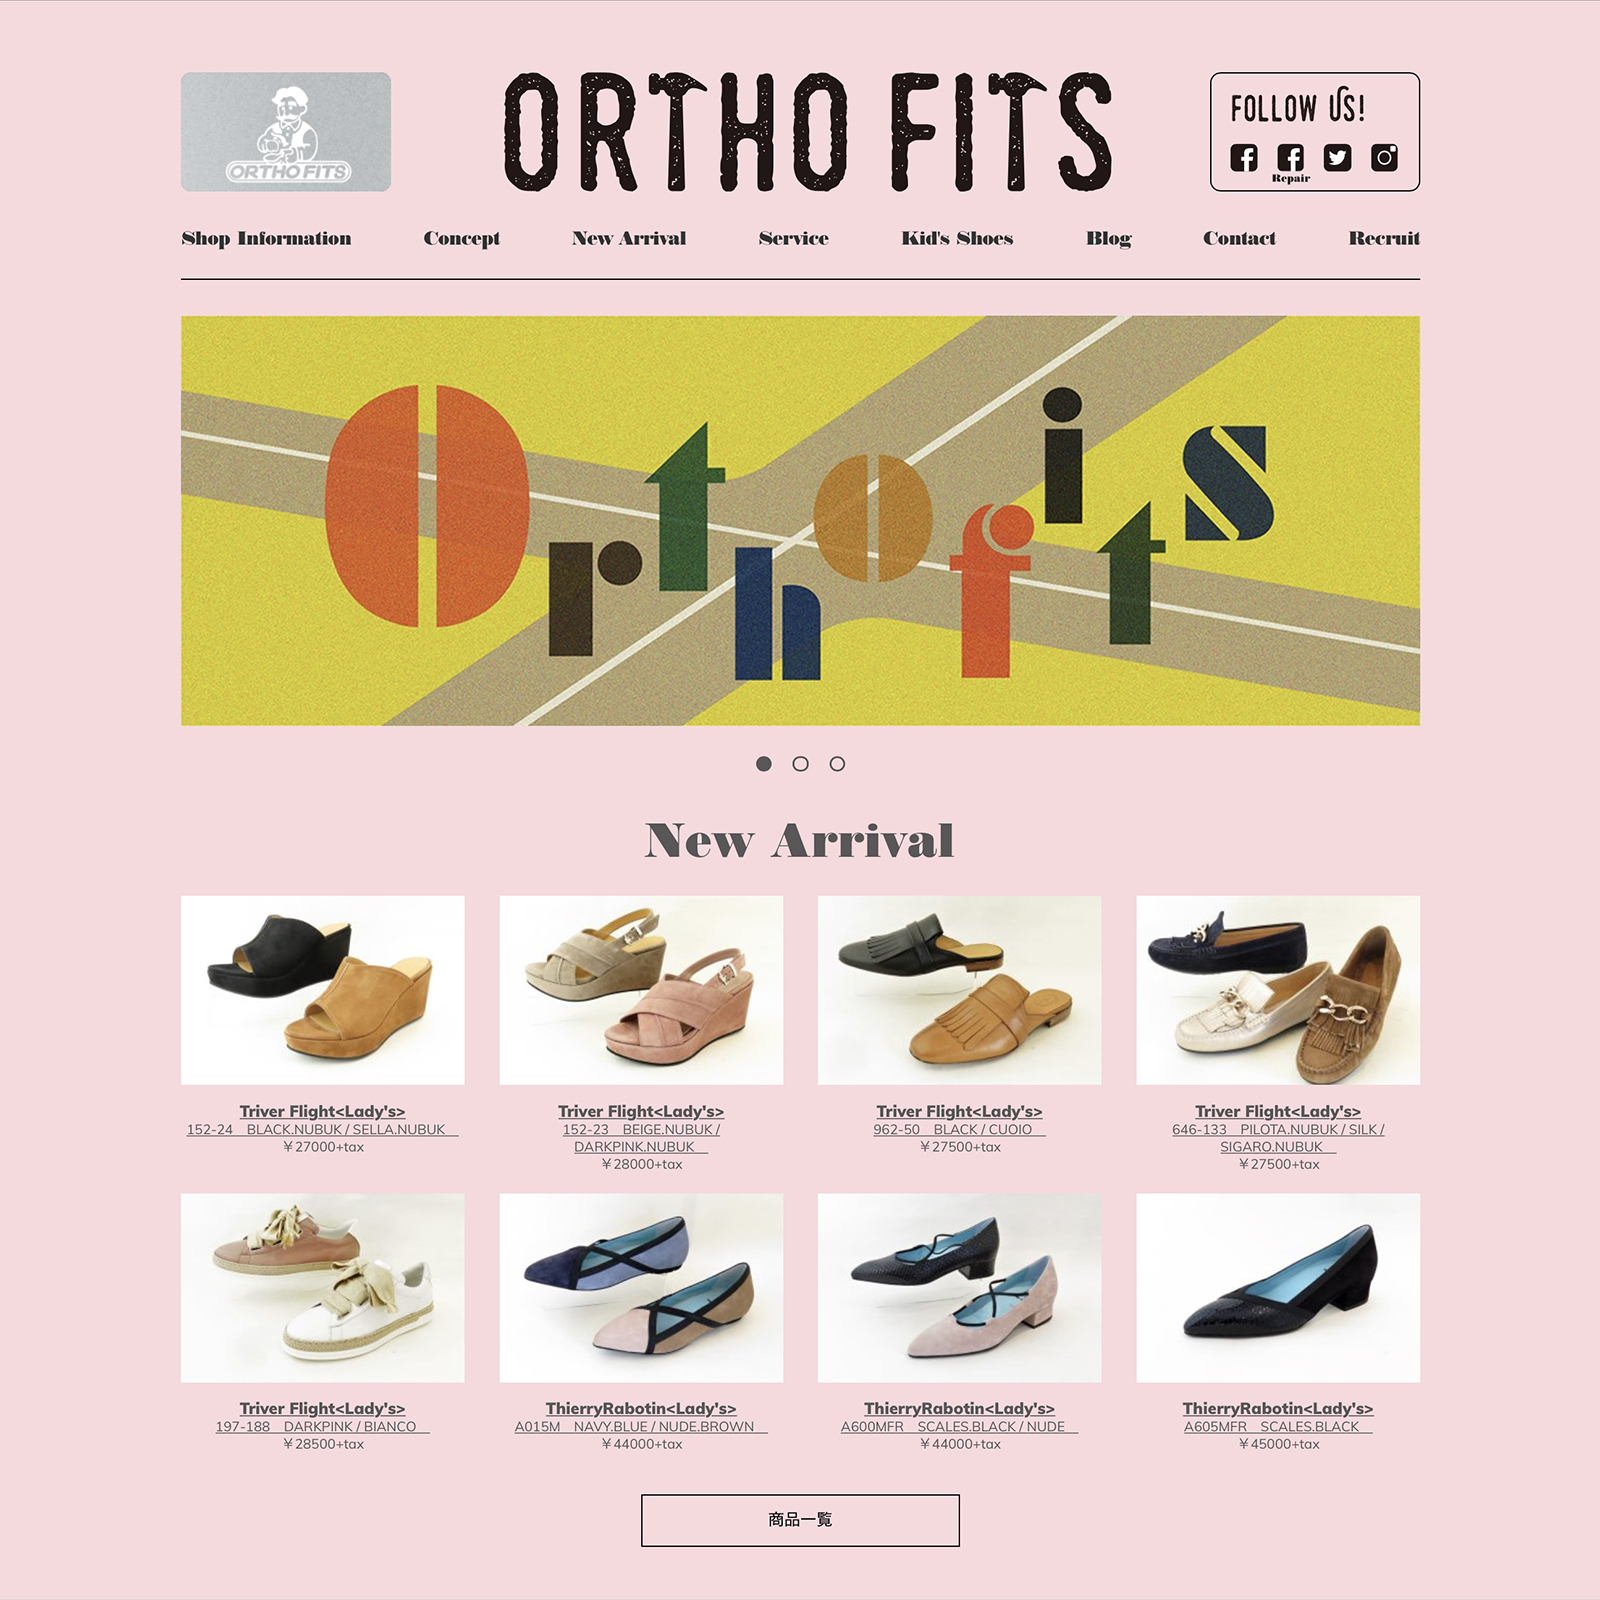 Orthofits “Home Page”